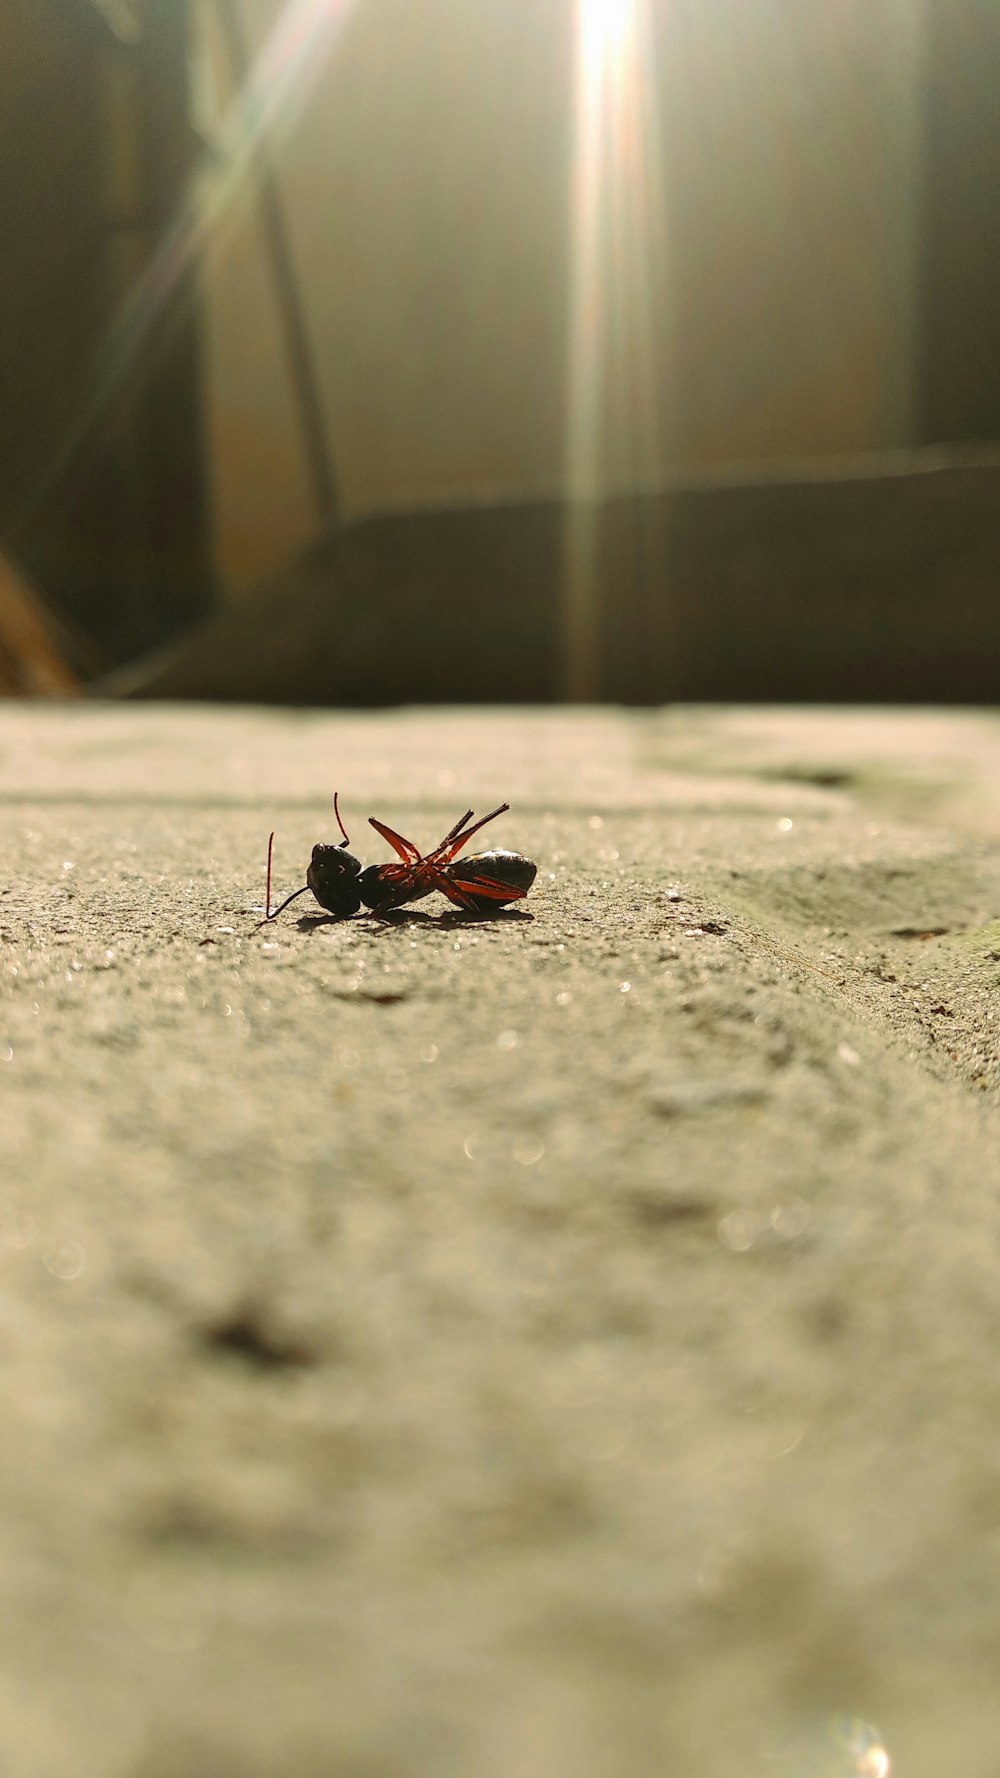 회색 콘크리트 바닥에 검은 색과 빨간색 곤충